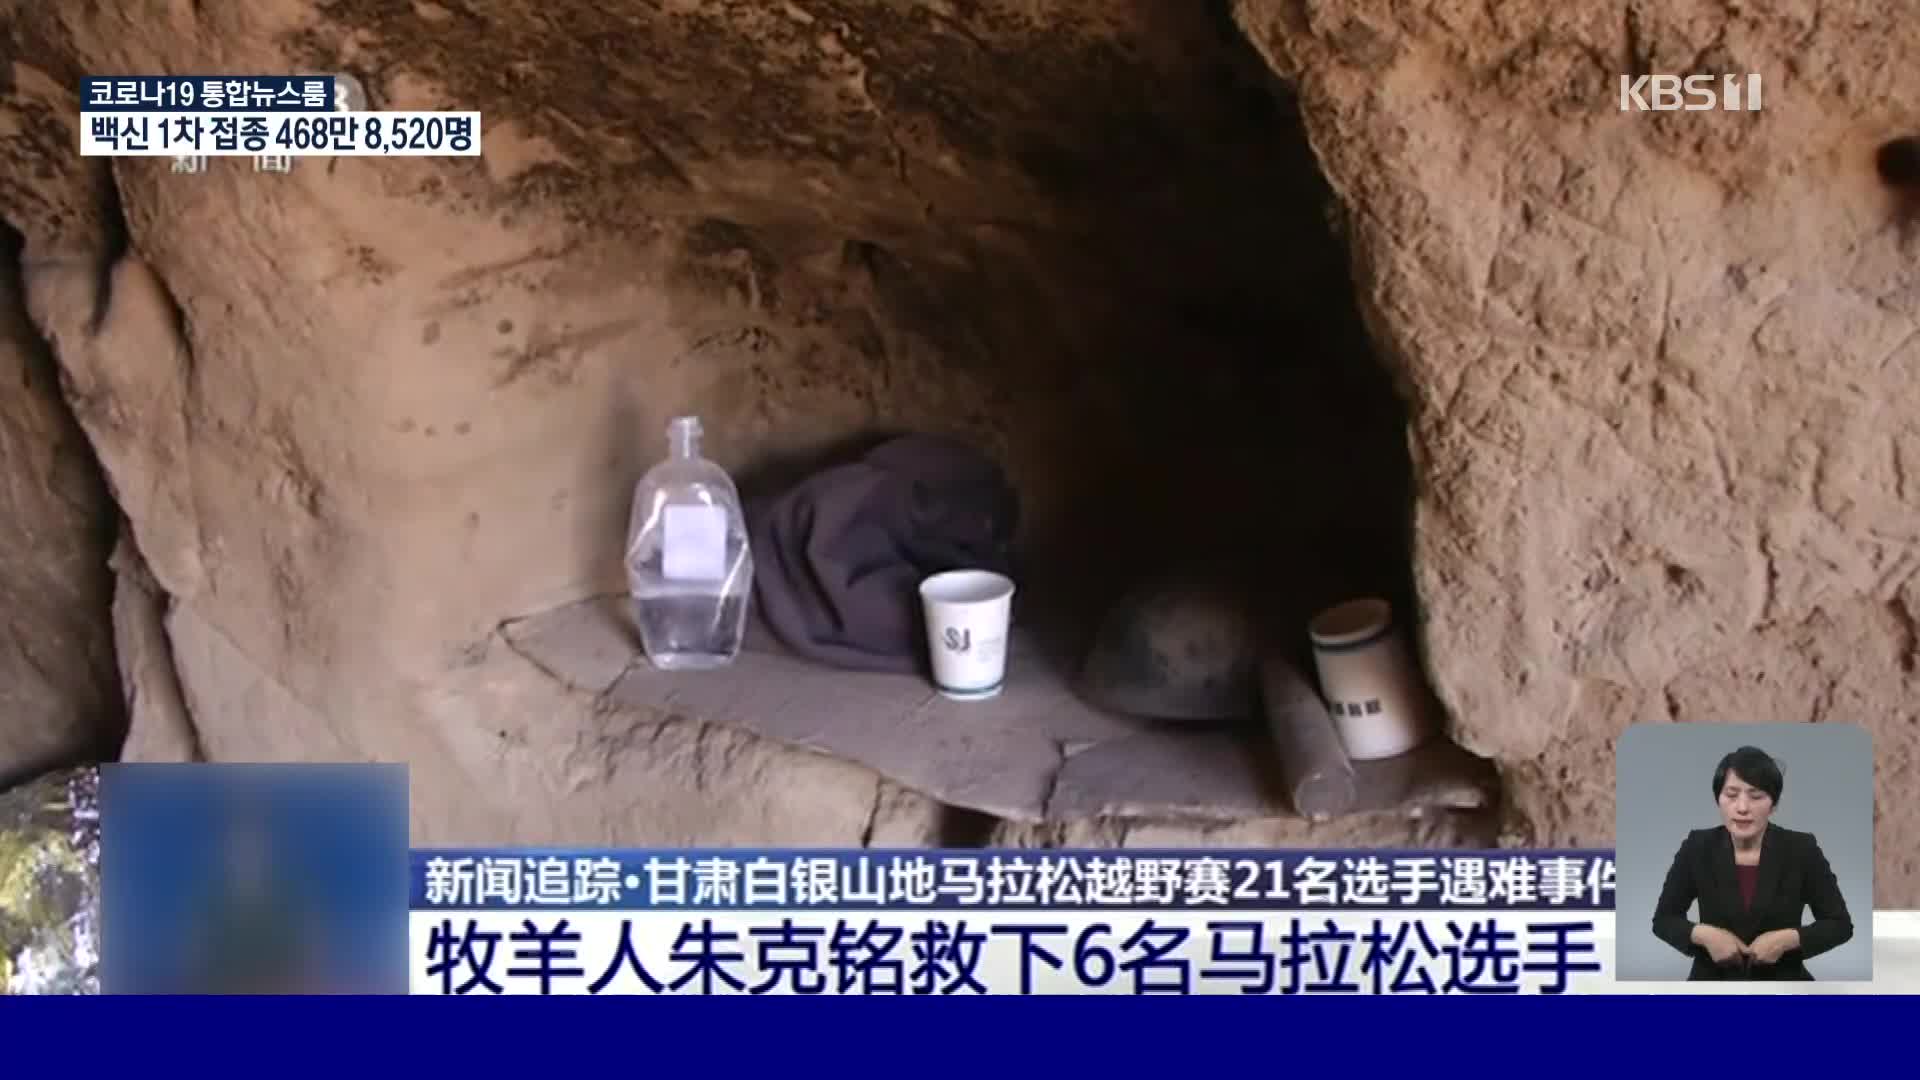 ‘21명 사망’ 중국 산악 마라톤, 주민 도움으로 더 큰 인명 피해 막아